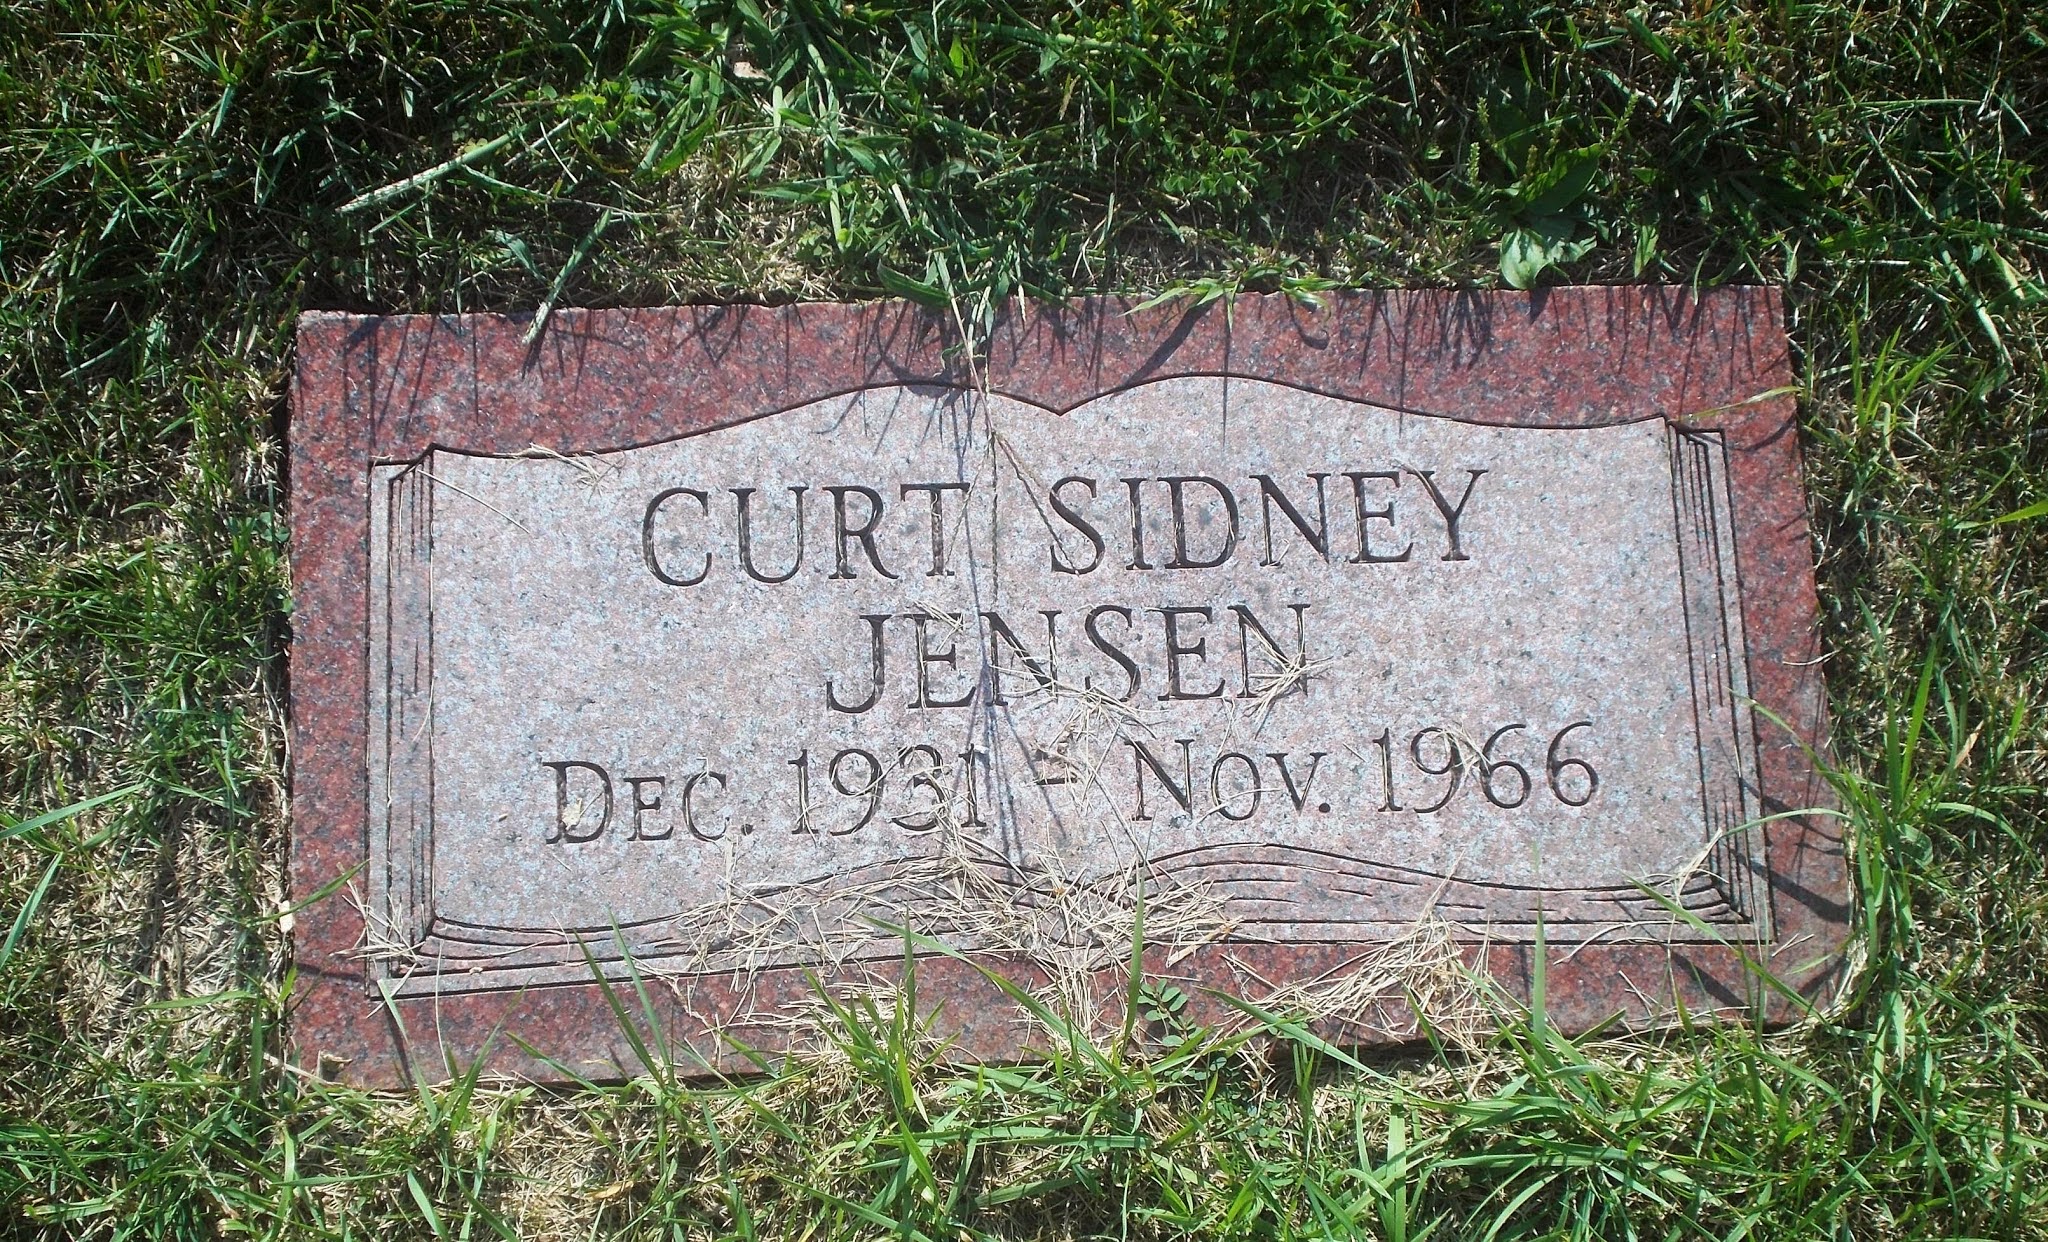 Curt Sidney Jensen